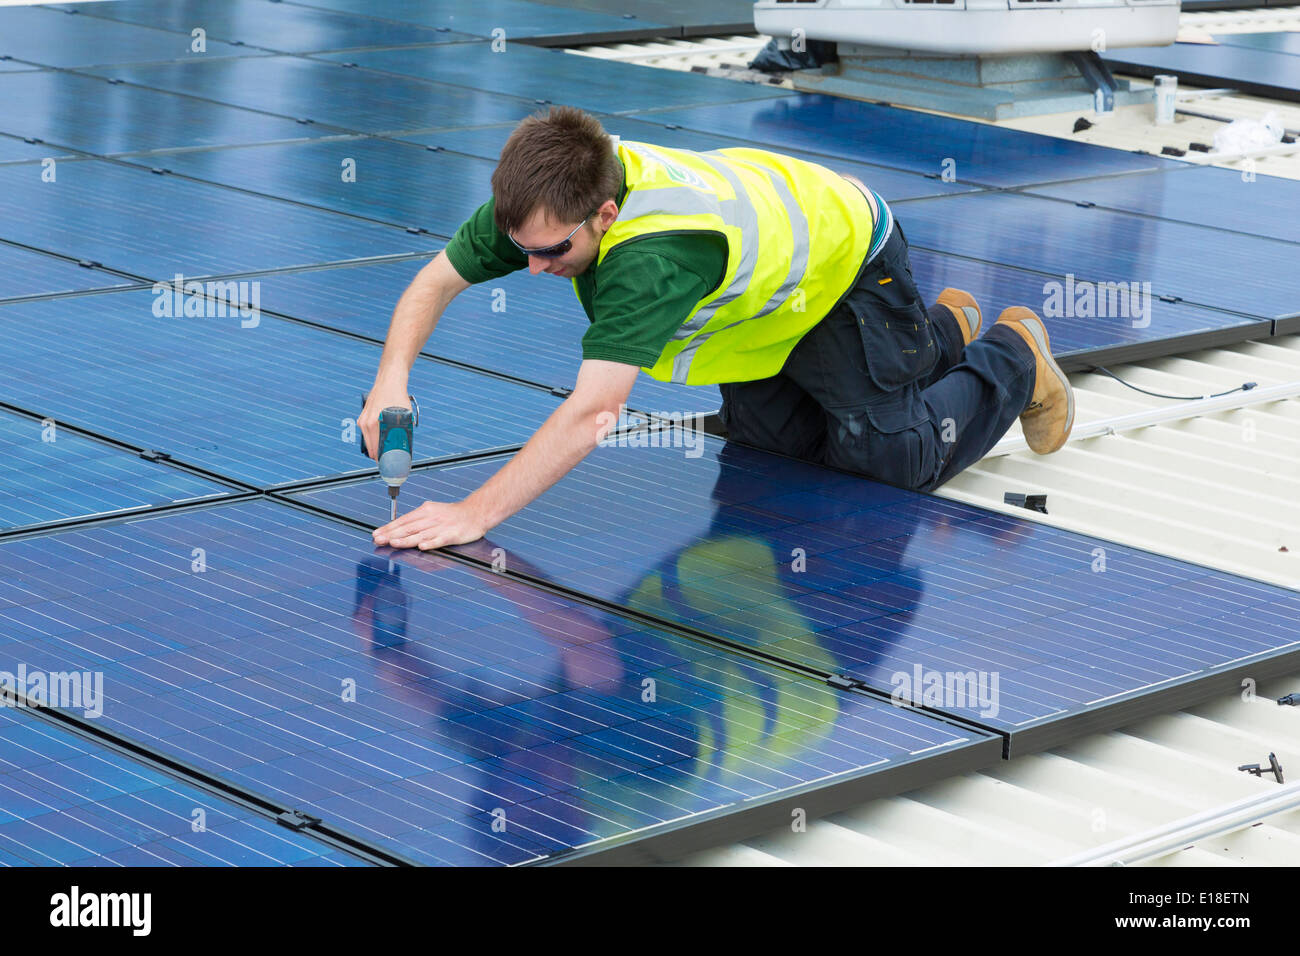 Les panneaux solaires photovoltaïques en cours d'installation sur un toit Banque D'Images